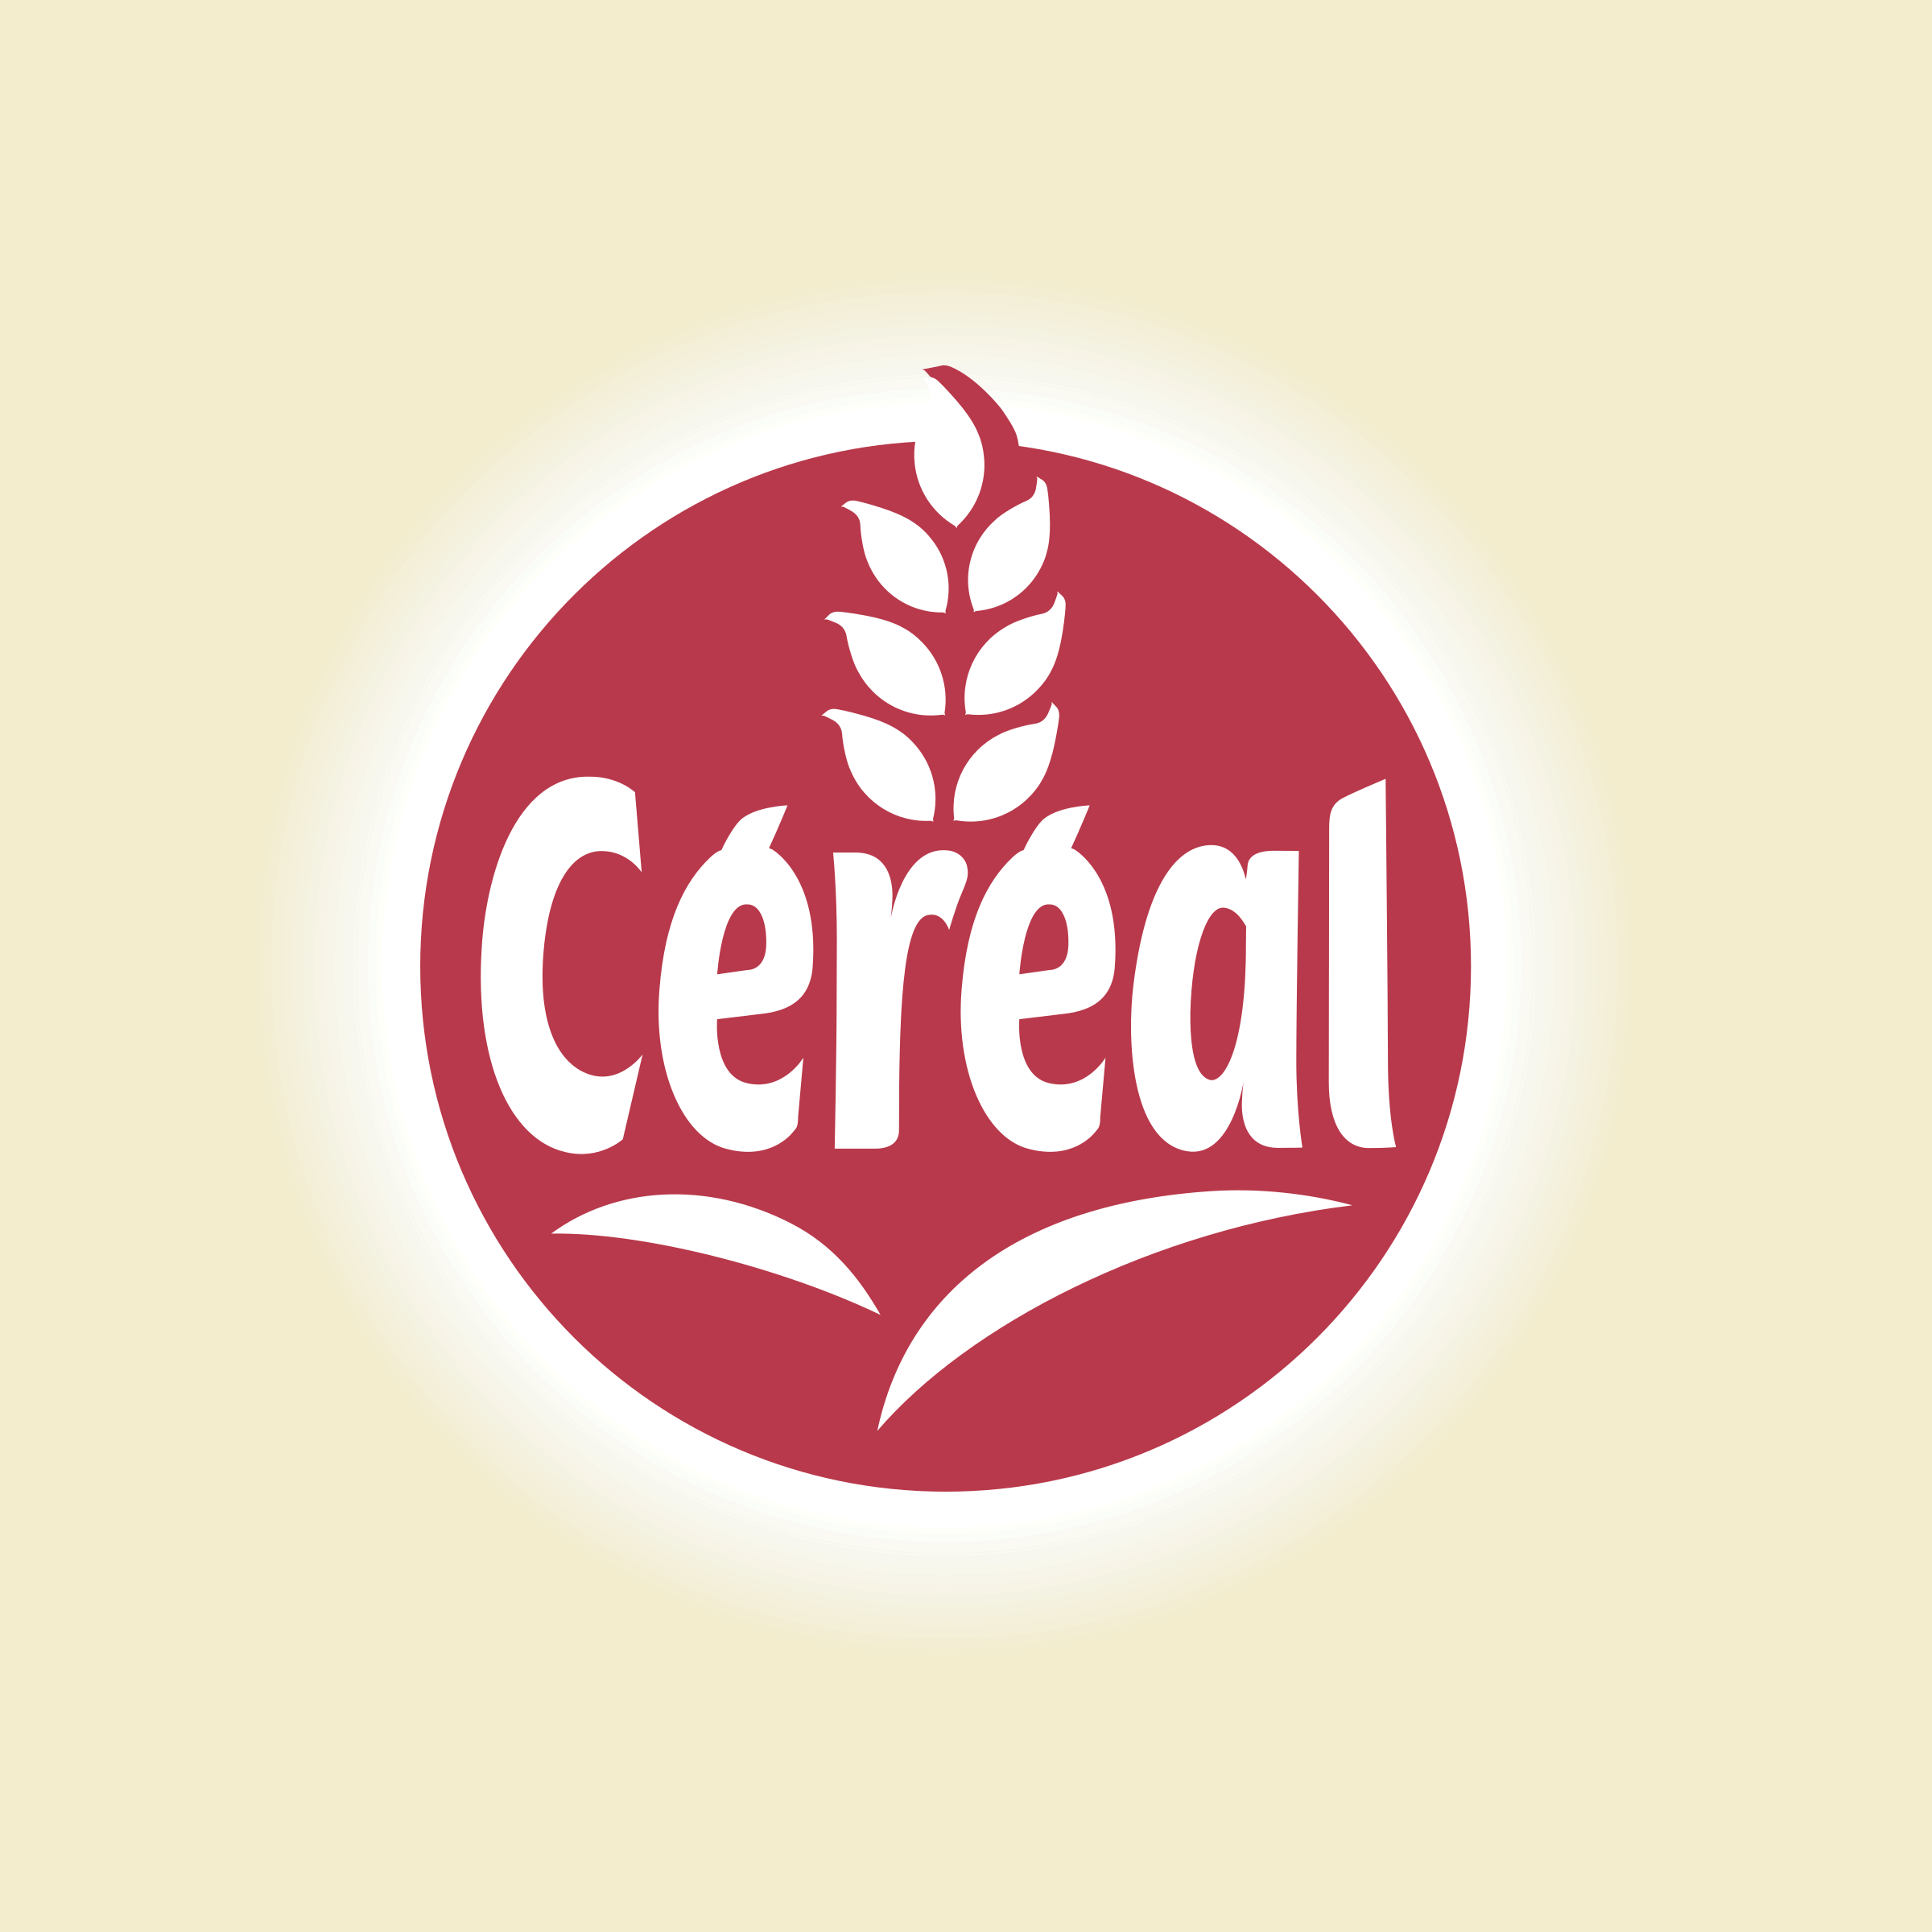 cereal brand logo maker